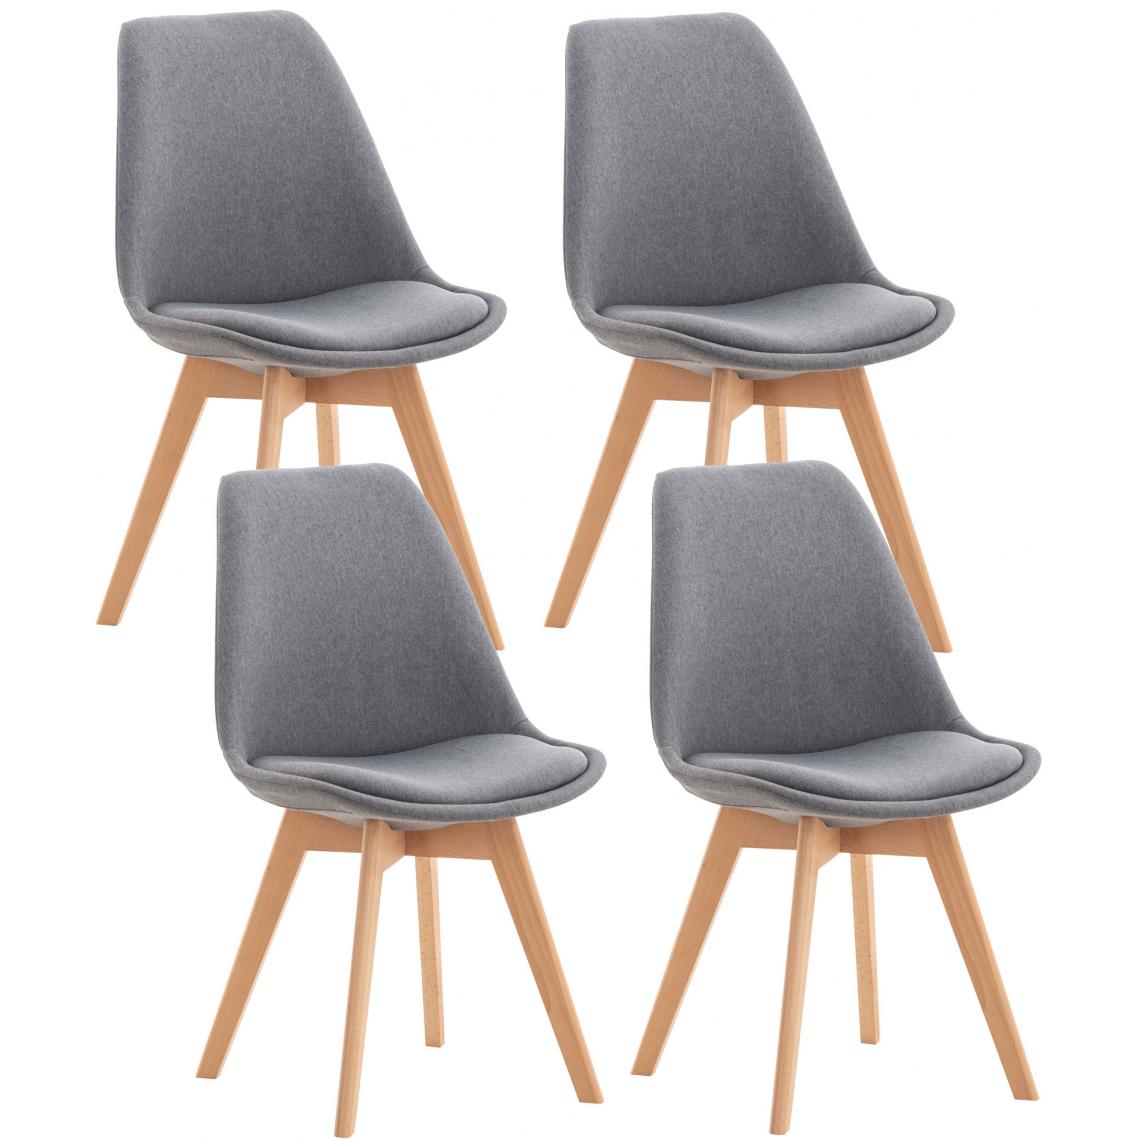 Icaverne - Esthetique Lot de 4 chaises en tissu Oulan-Bator couleur gris clair - Tabourets